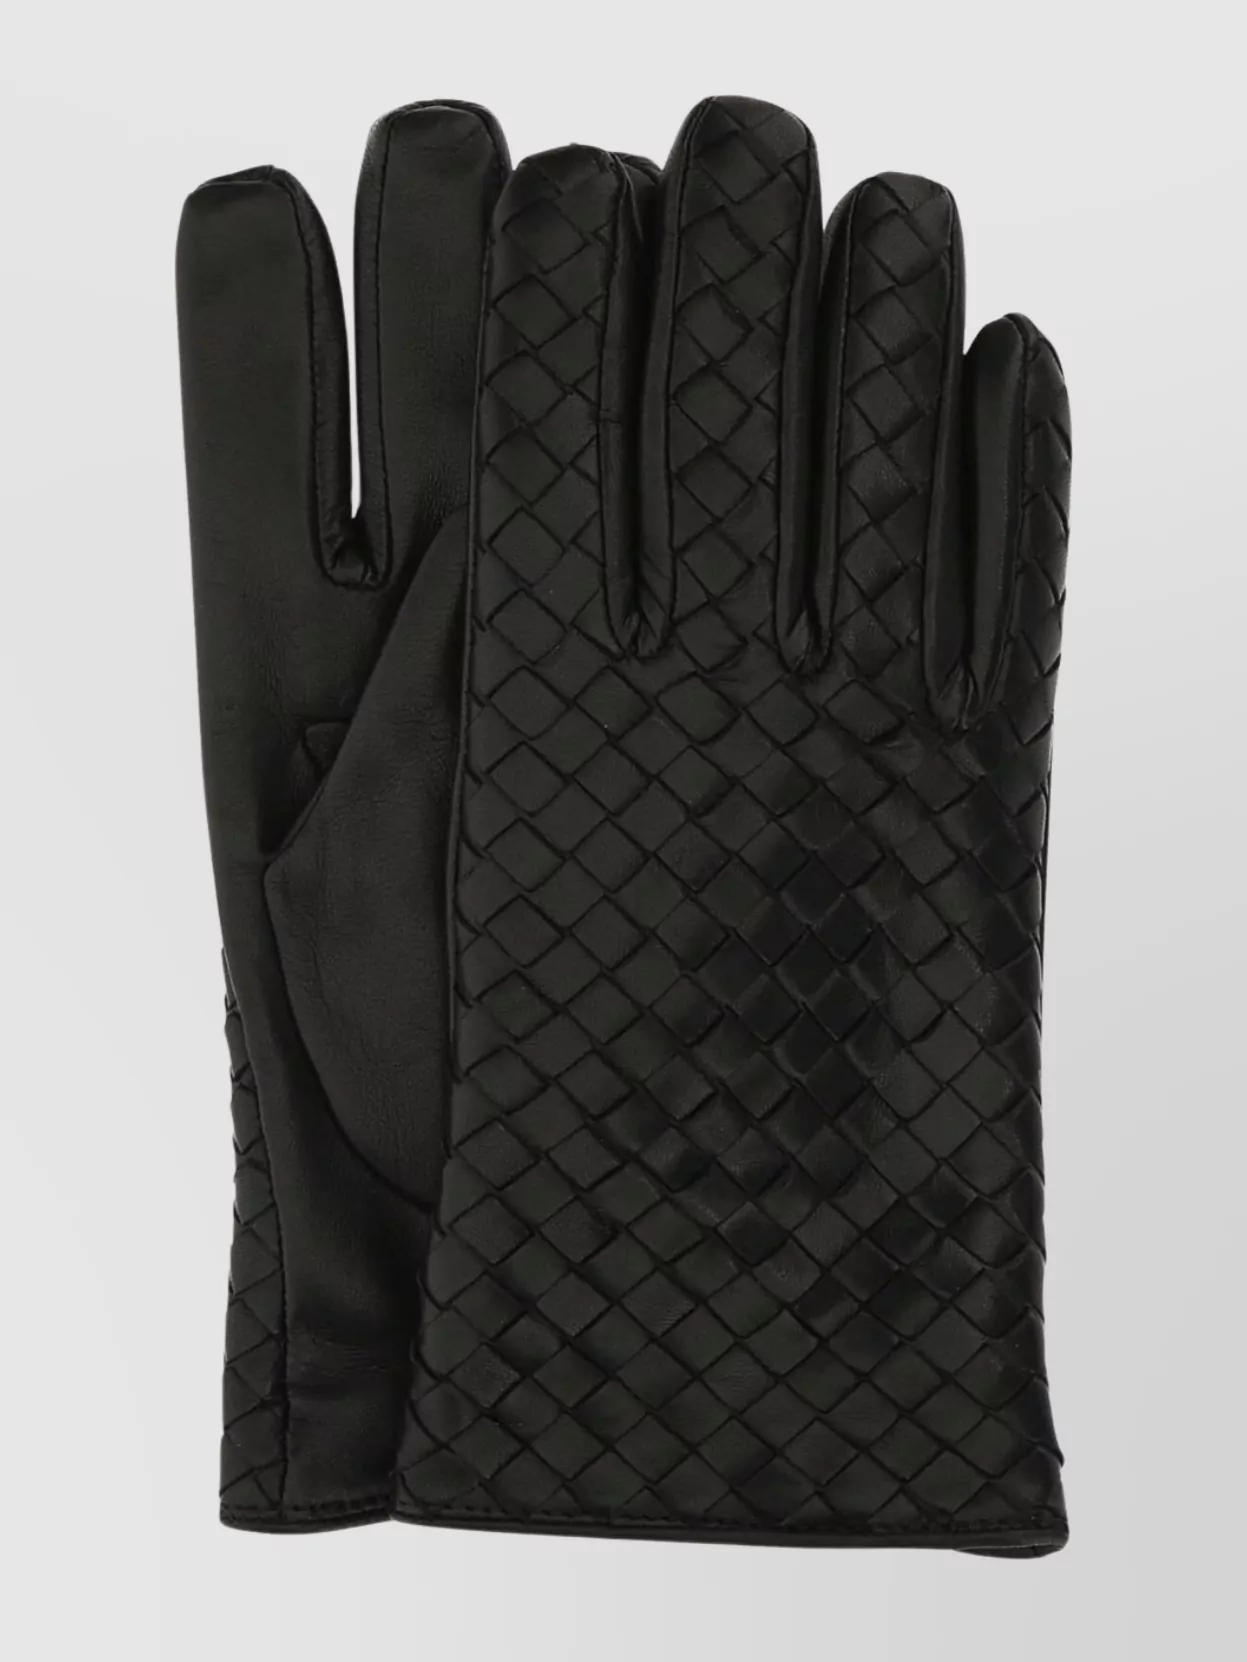 Shop Bottega Veneta Leather Gloves With Full Finger Coverage